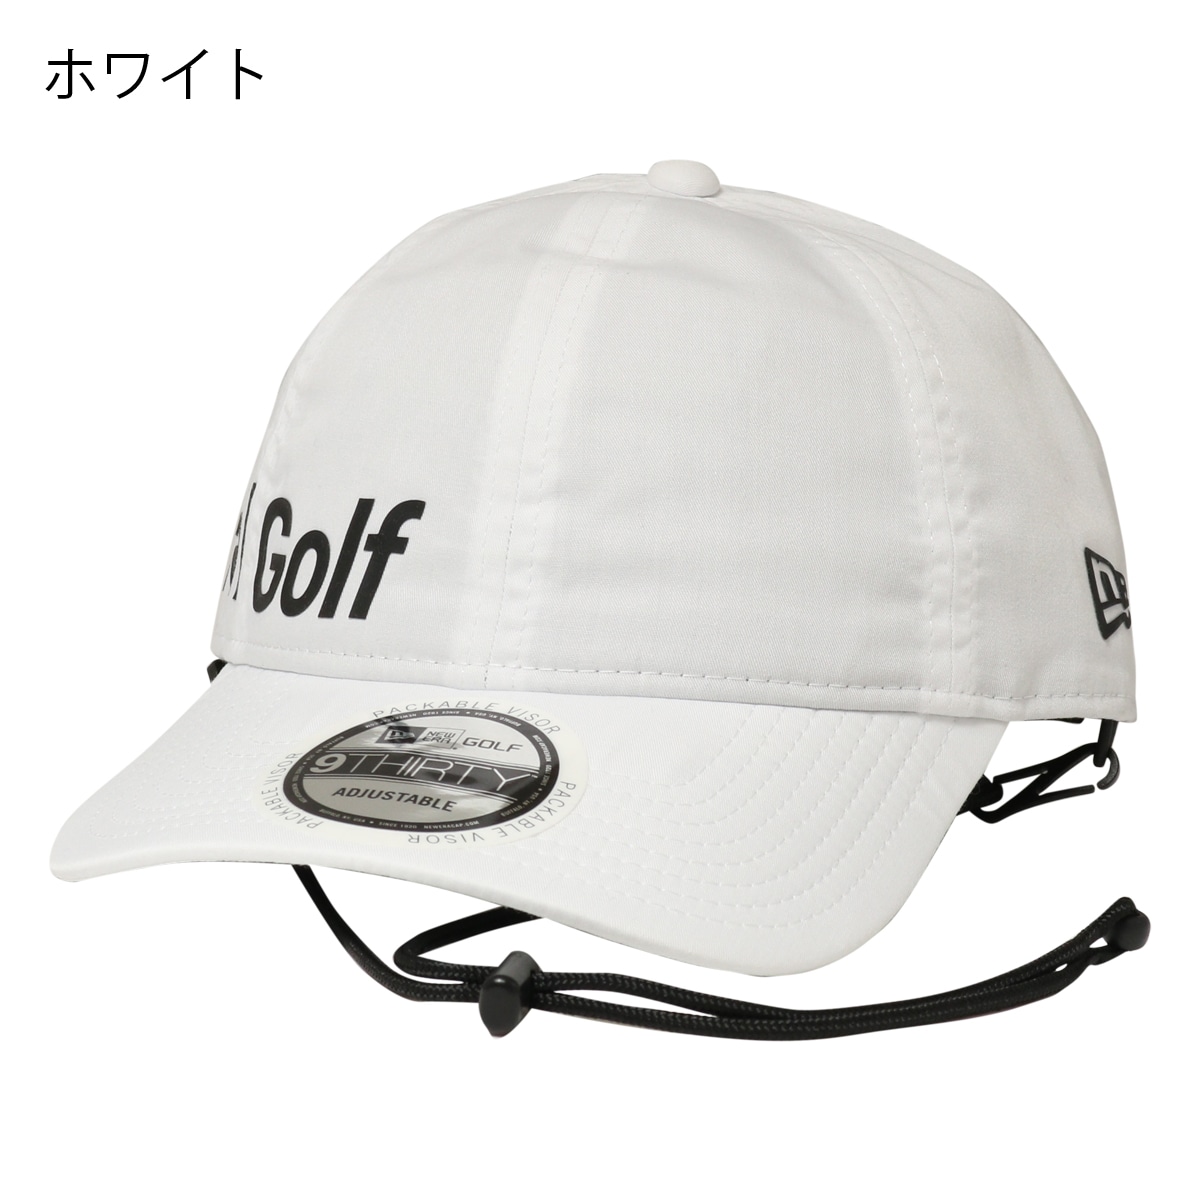 ニューエラ ゴルフ キャップ 帽子 GF 930 ECOPET メンズ